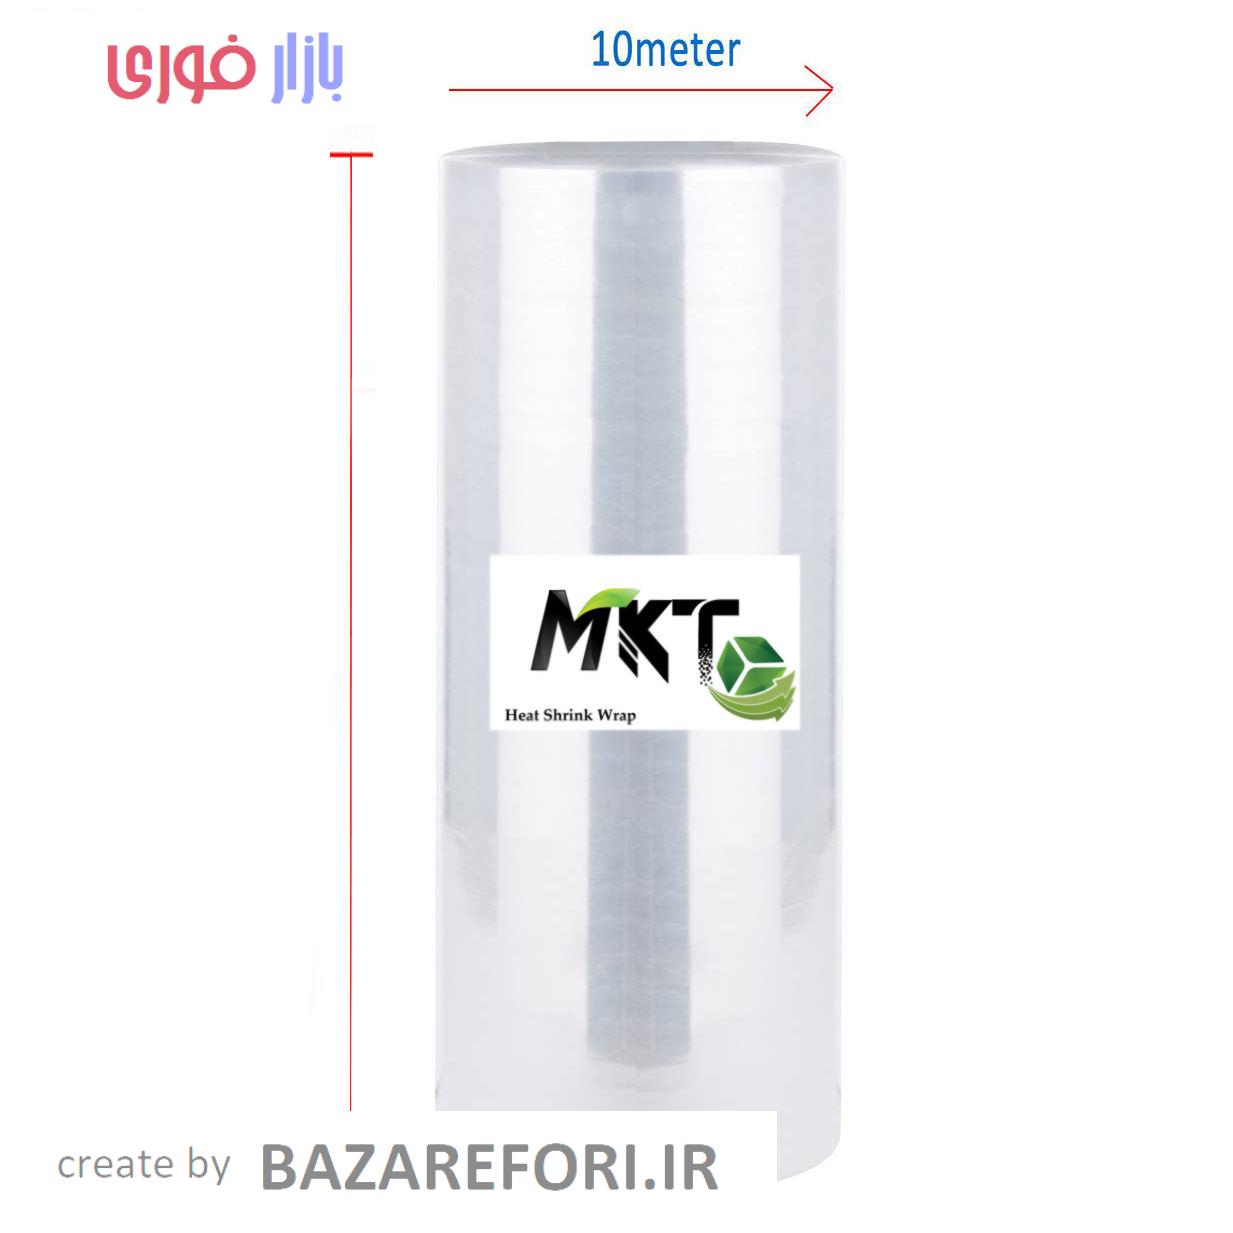 پلاستیک شیرینگ حرارتی مدل MKT کد 11 رول 10 متری